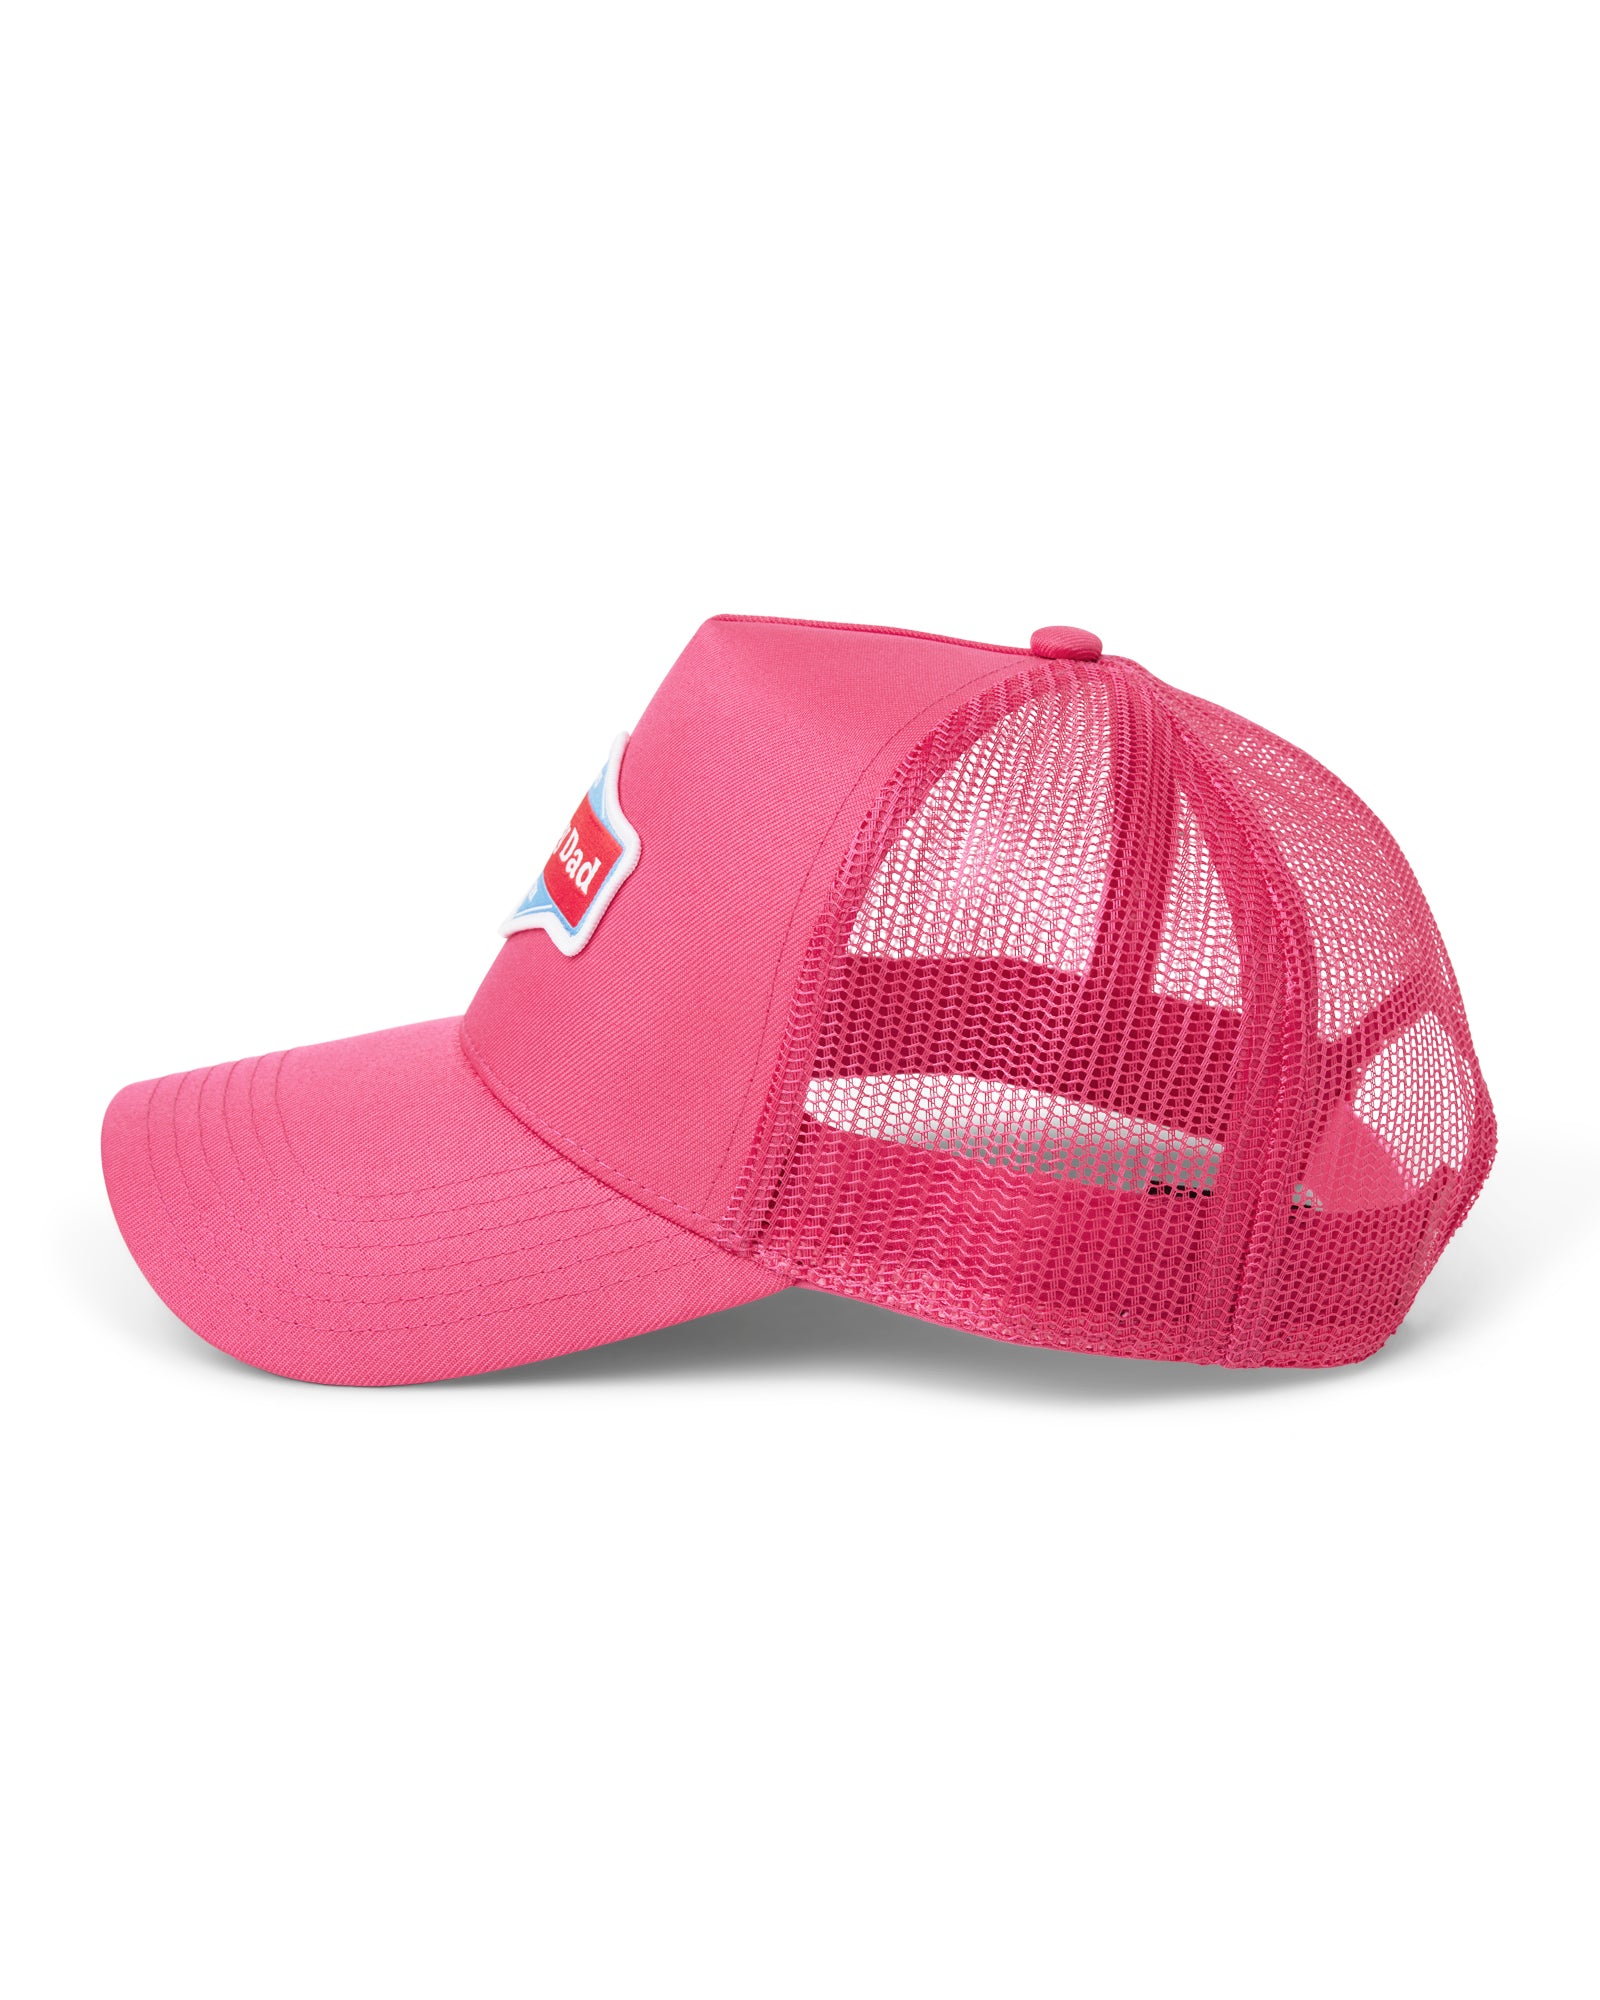 Happy Dad Trucker Hat (Pink)